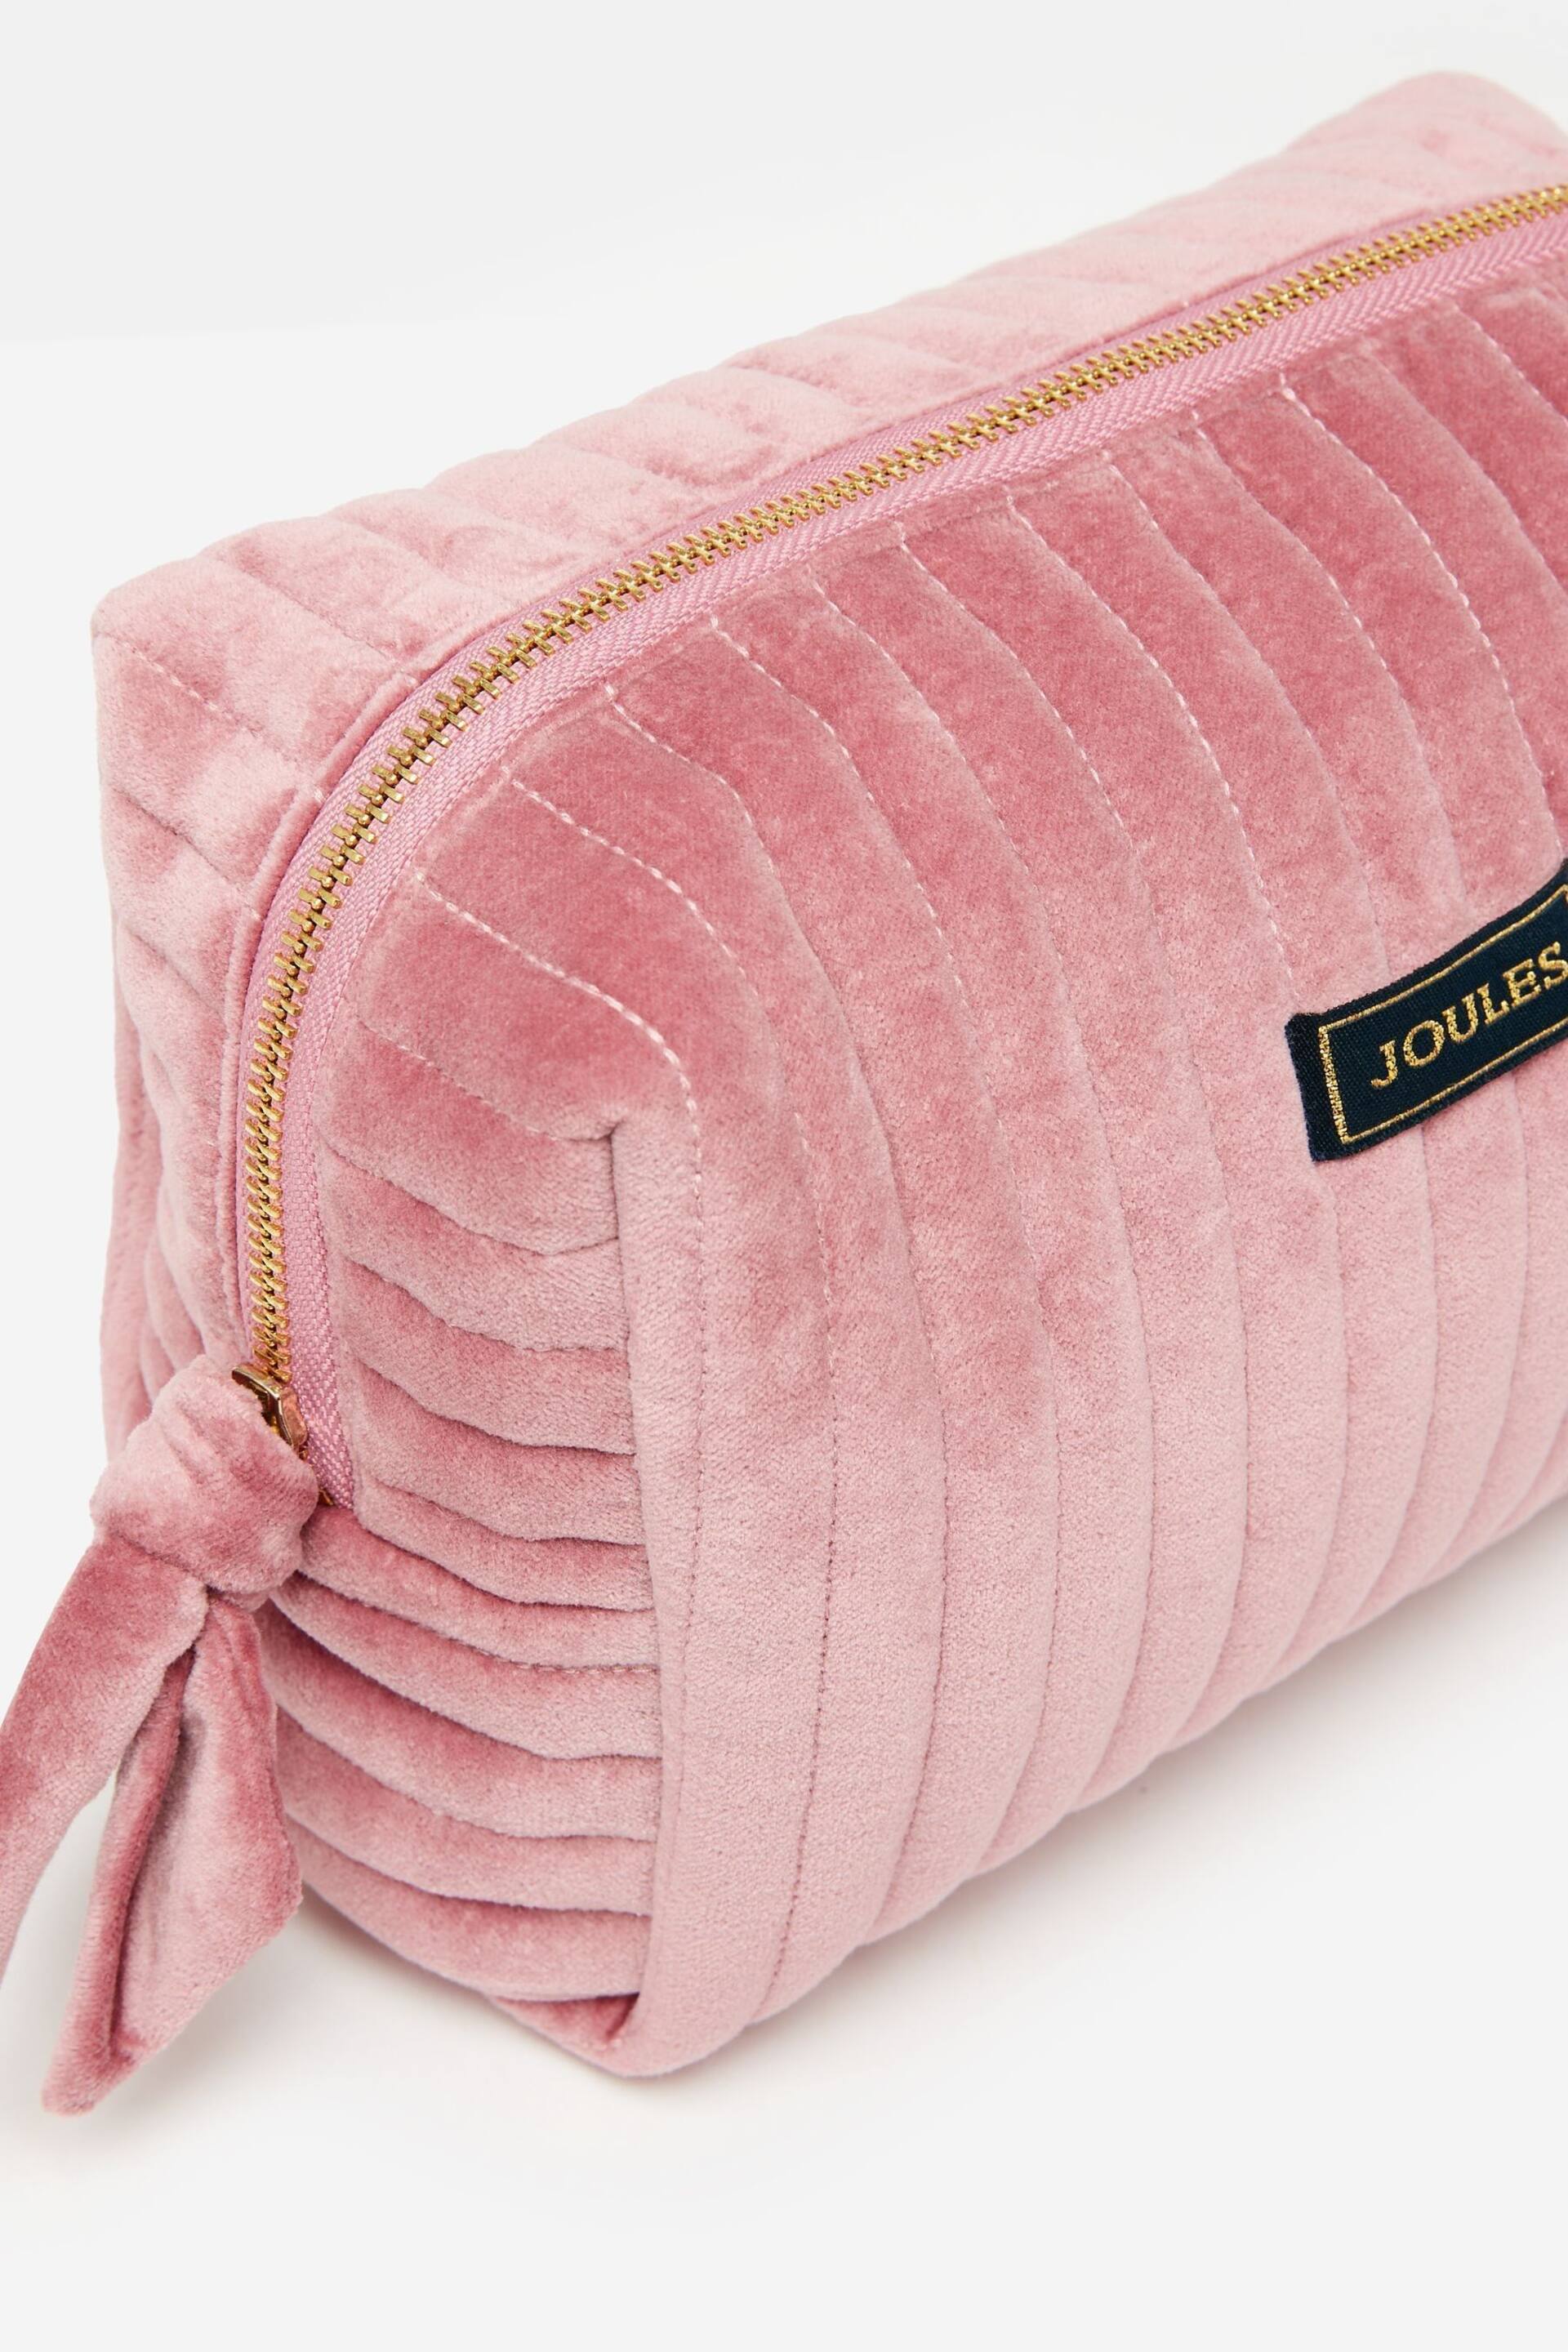 Joules Lillia Rose Pink Velvet Wash Bag - Image 5 of 6